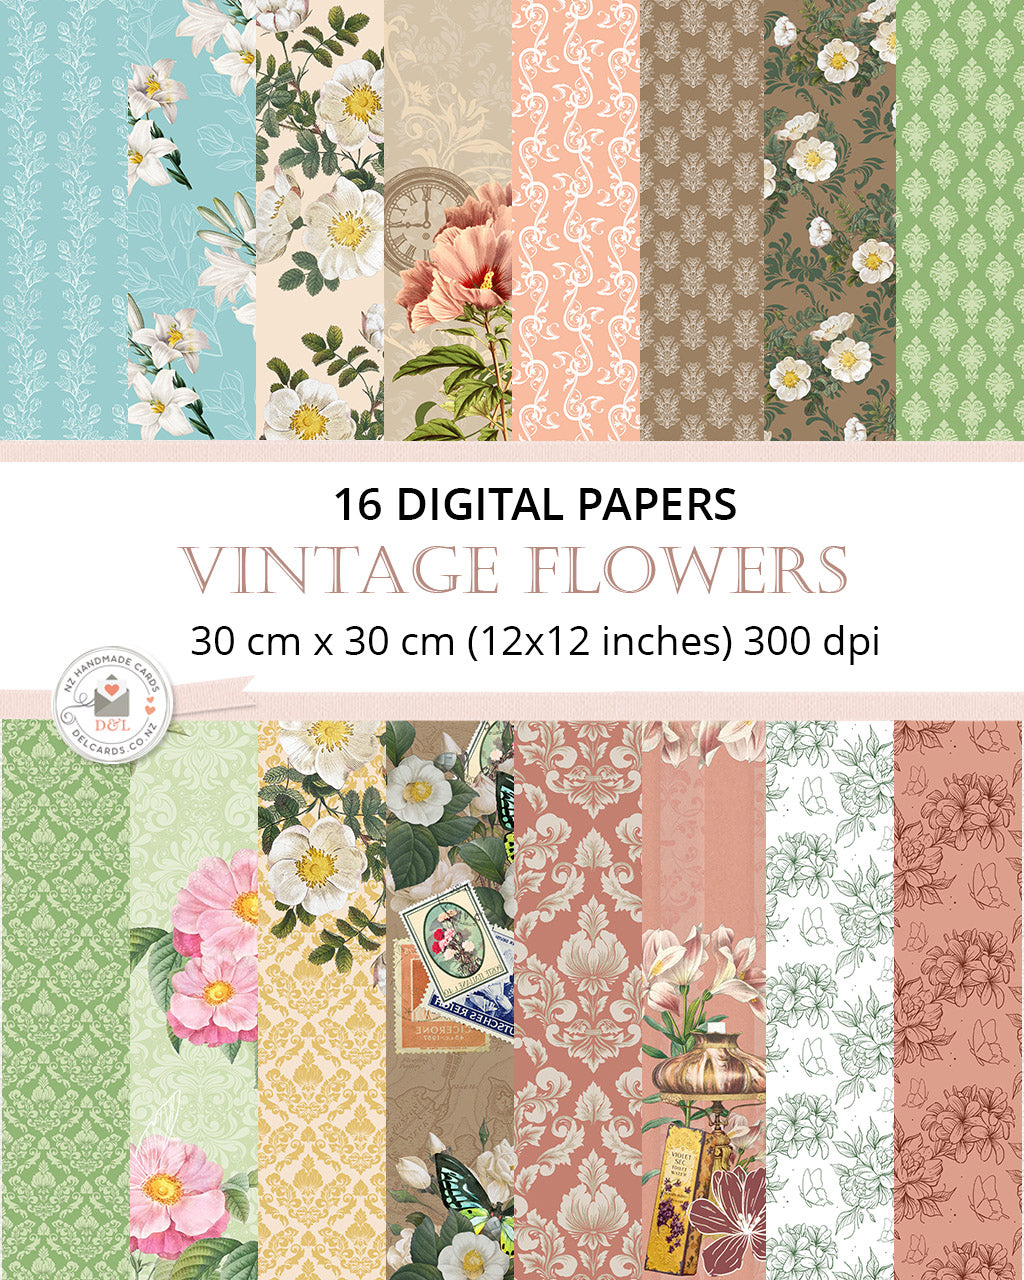 16 Digital Papers - Vintage Flowers